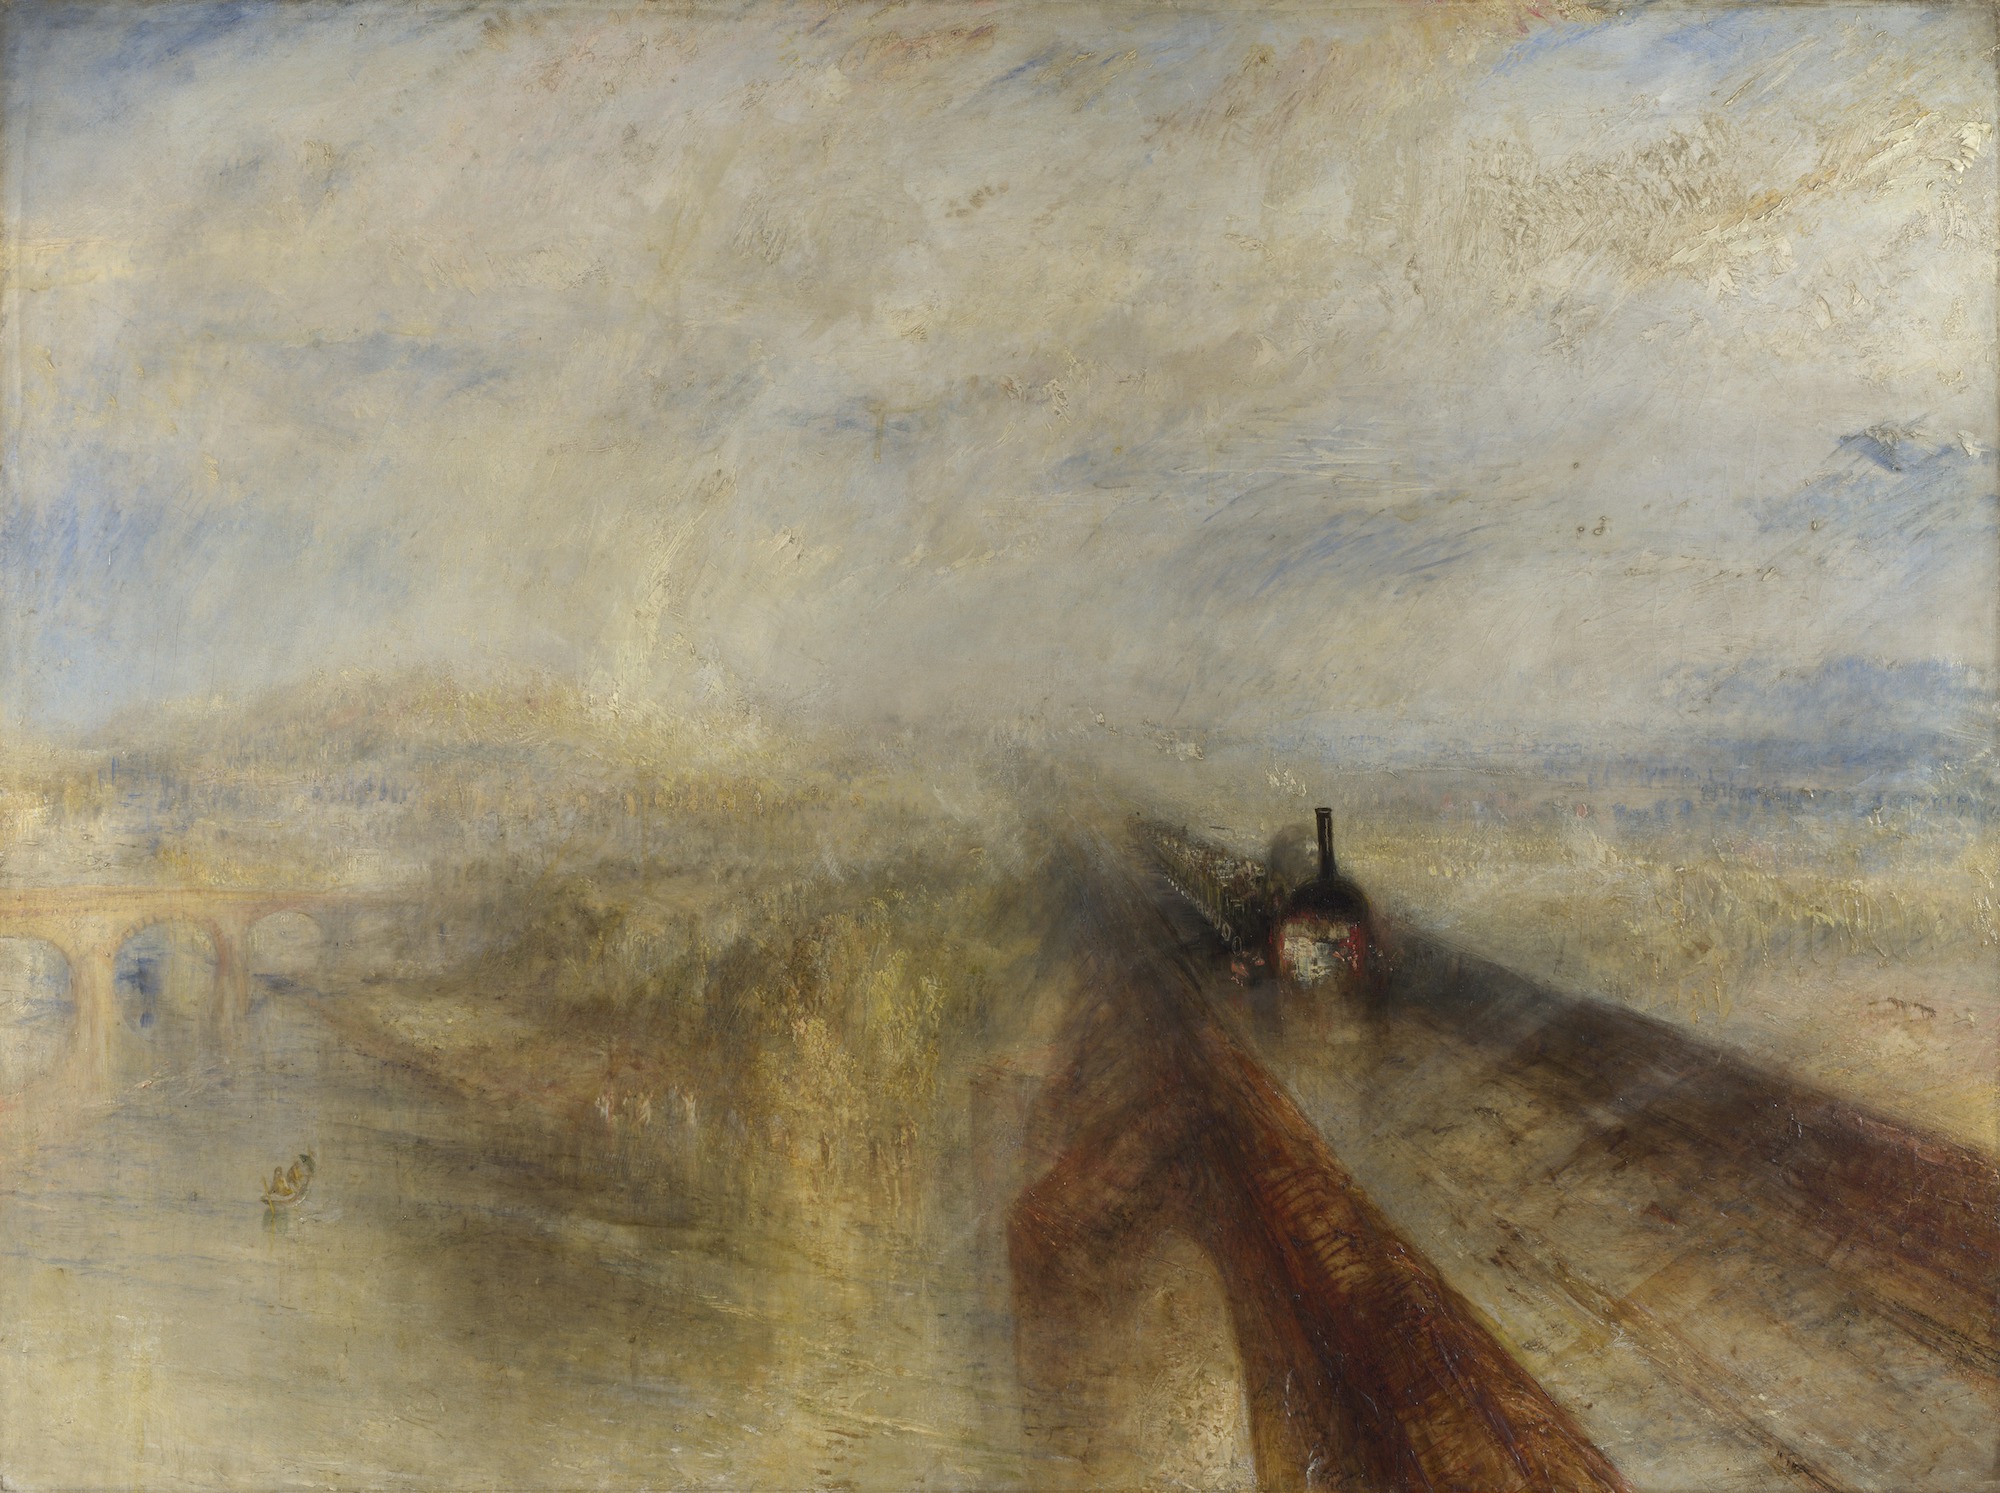 Deszcz, para i prędkość - Wielka Zachodnia Kolej Żelazna by Joseph Mallord William Turner - 1844 - 91 x 122 cm 